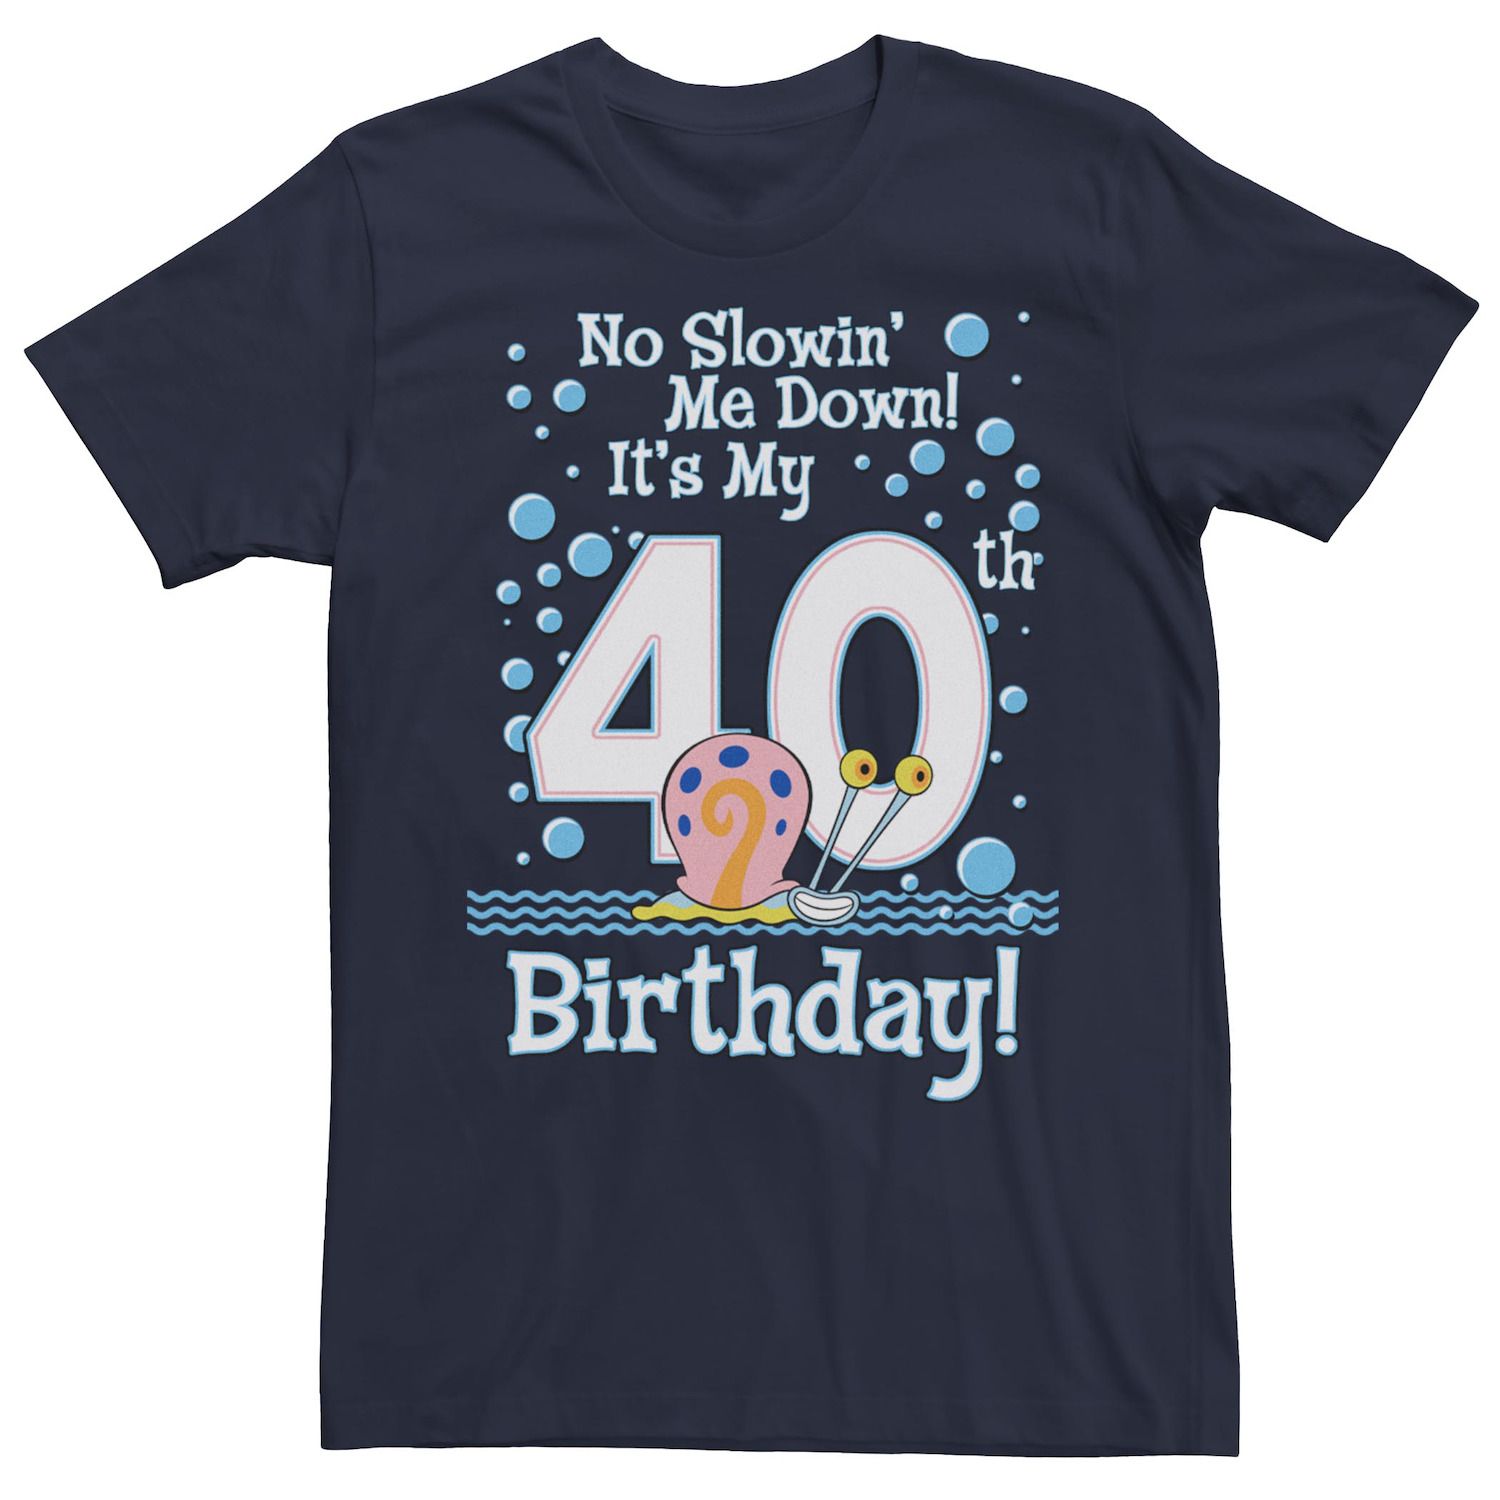 винтажная забавная мужская хлопковая футболка с короткими рукавами с принтом подарок на день рождения 27 лет 1994 Мужская футболка с короткими рукавами на день рождения «Губка Боб Квадратные Штаны» Гэри на 40 лет Licensed Character